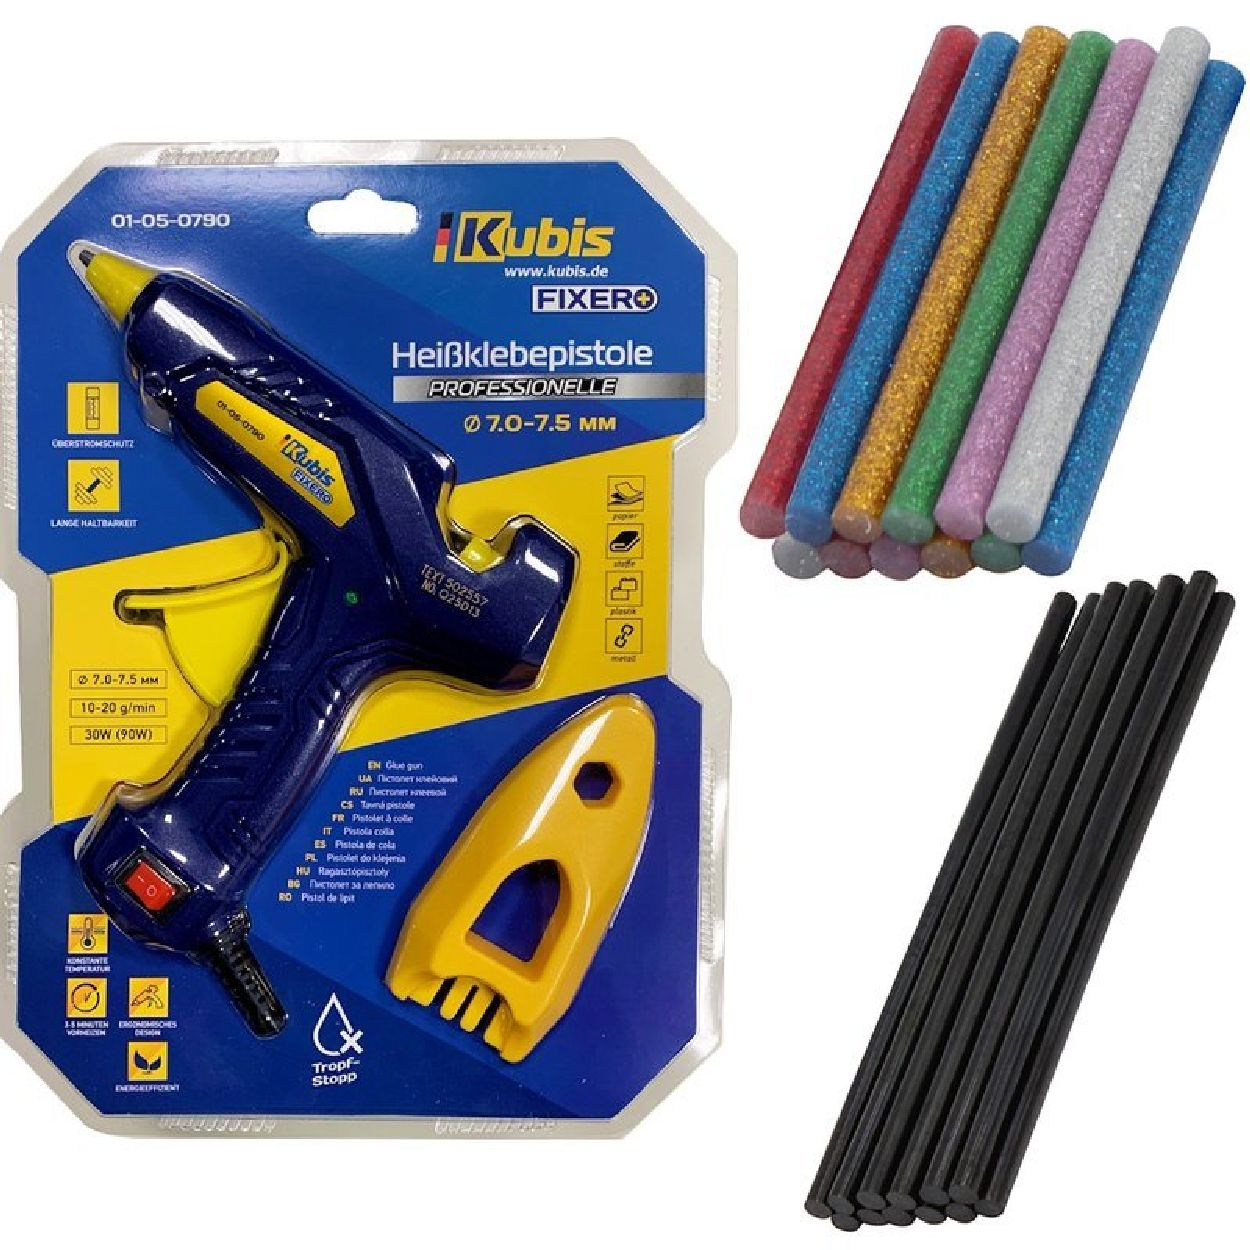 INBUSCO / KUBIS 2x-gelb,blau,gruen,rot,braun Multifunktionswerkzeug, KlebepistoleSET KB01-05-0790 -V2-Set